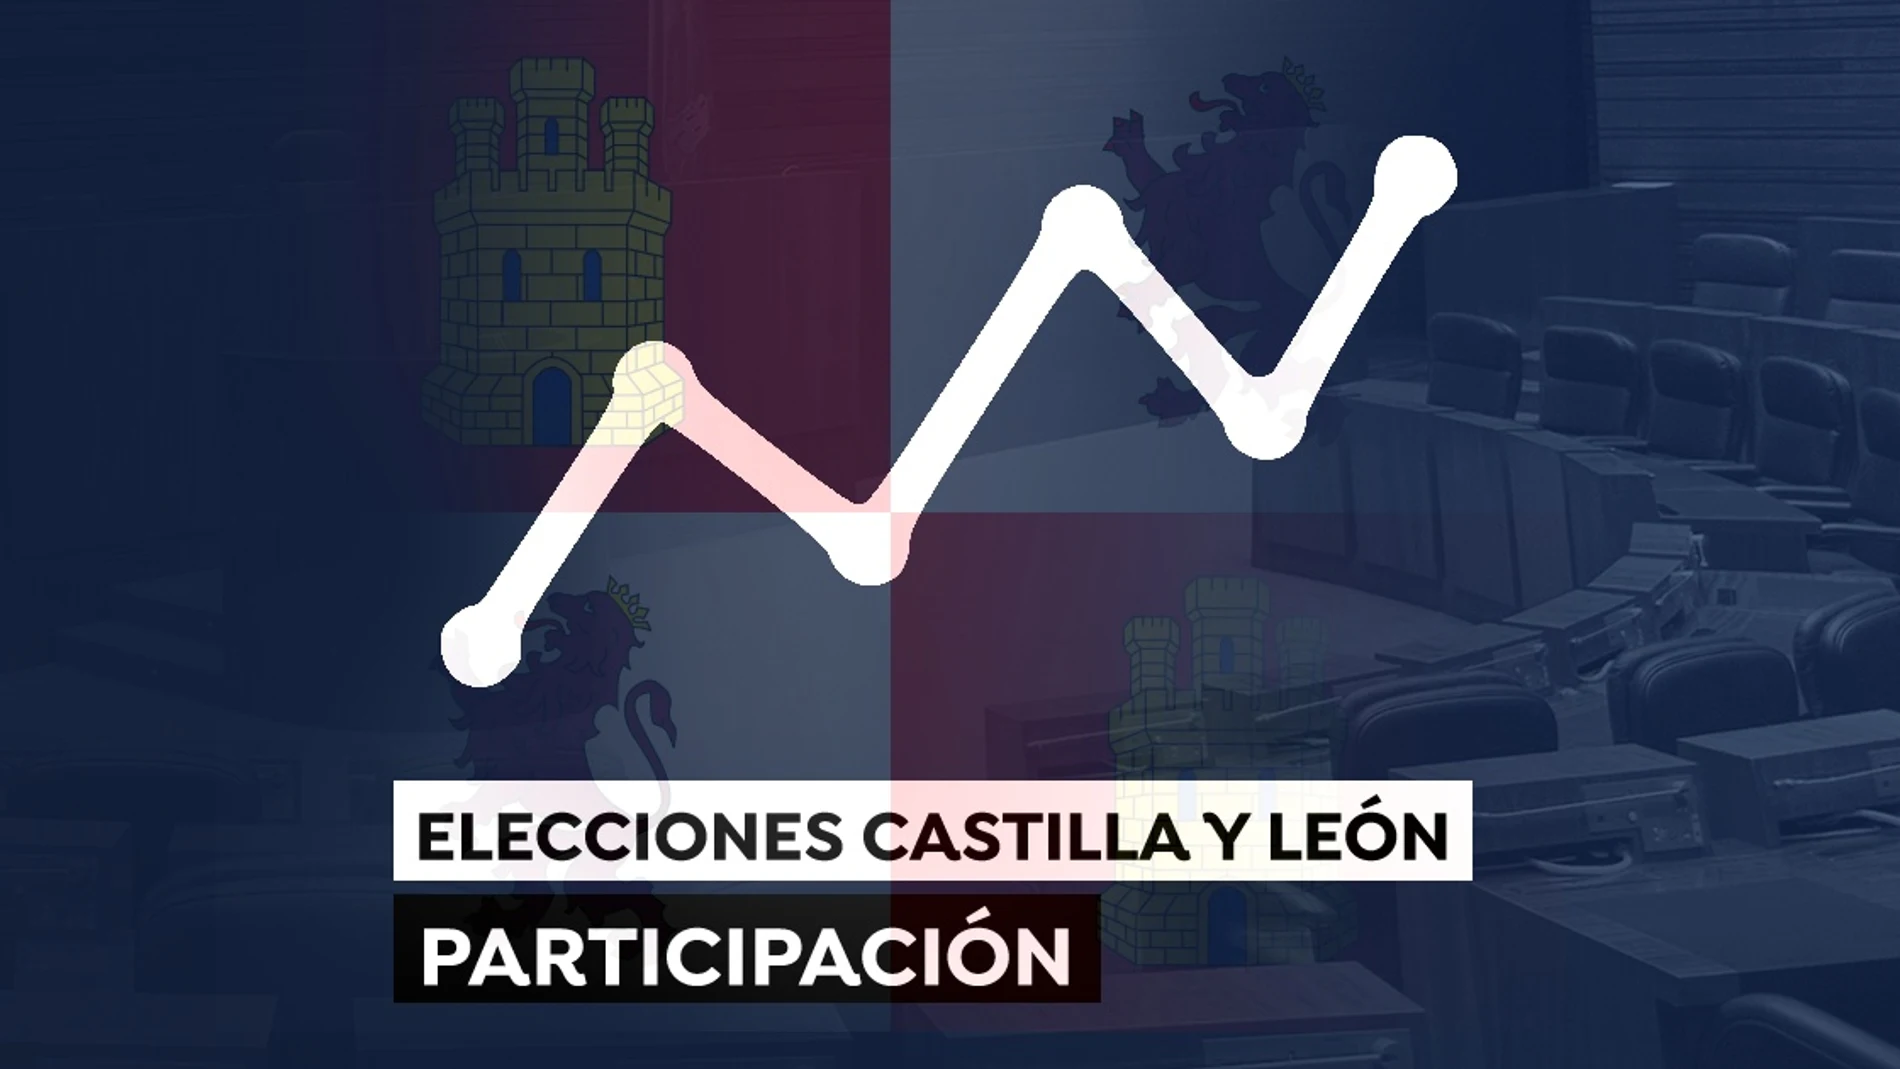 Participación en las elecciones de Castilla y León